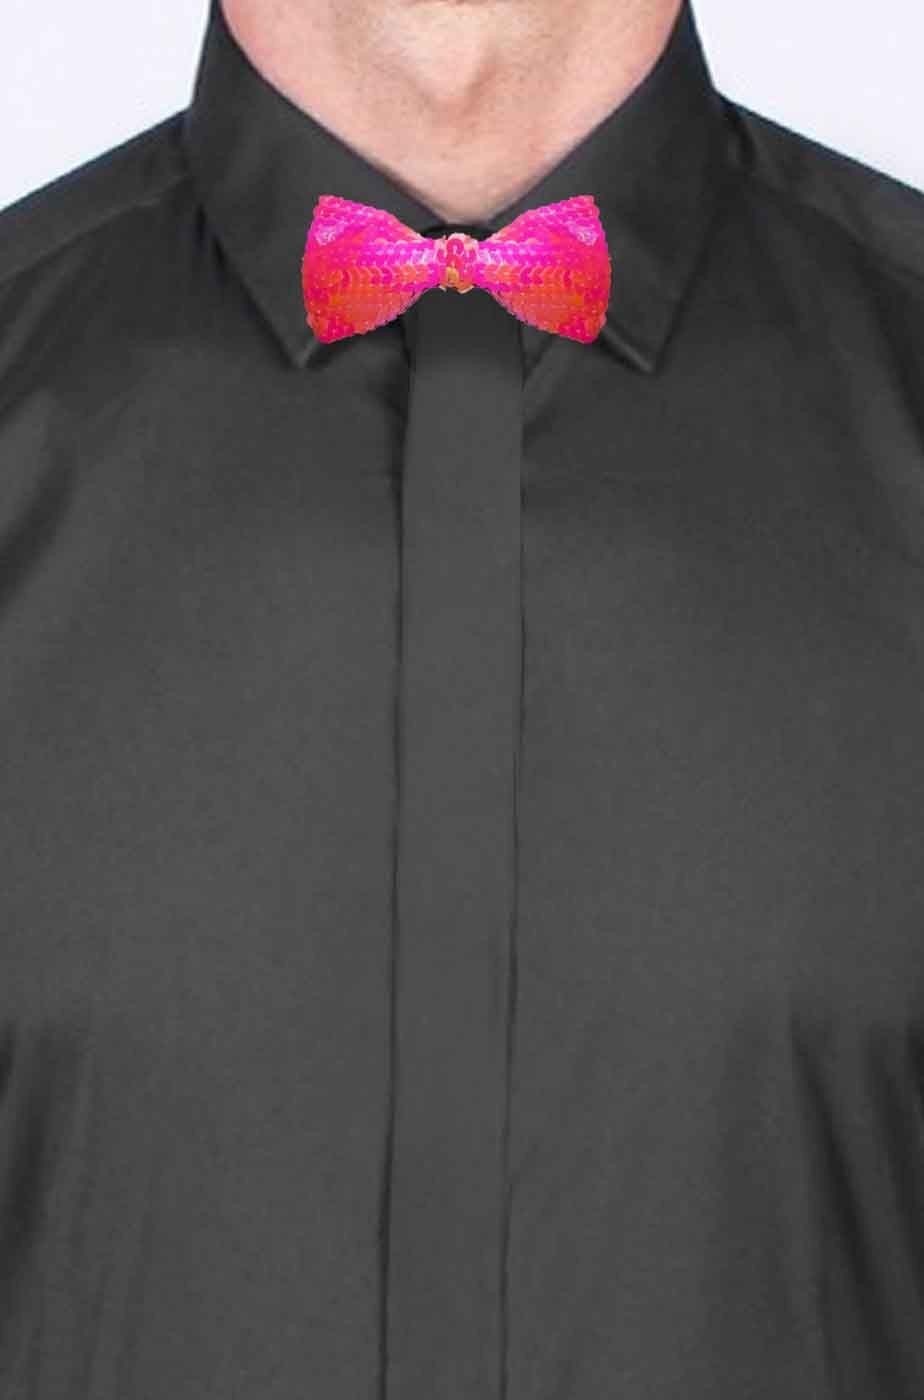 Cravattino Farfallino Papillon in paillette rosa con elastico